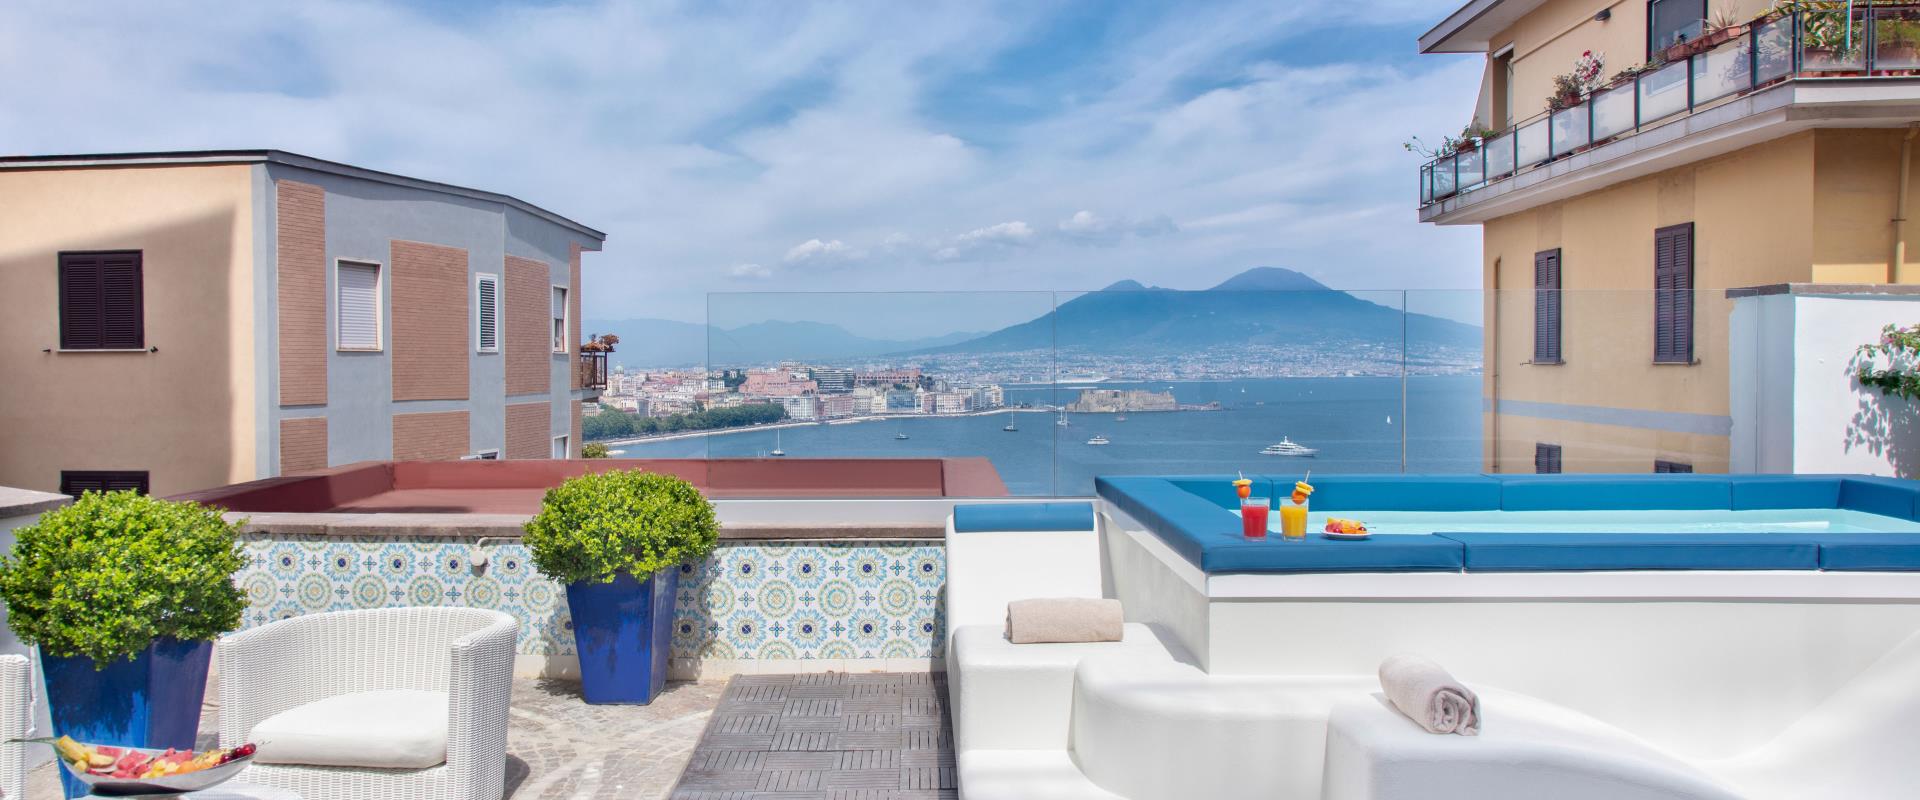 Ein erfrischendes Badezimmer mit Blick auf den Golf von Neapel